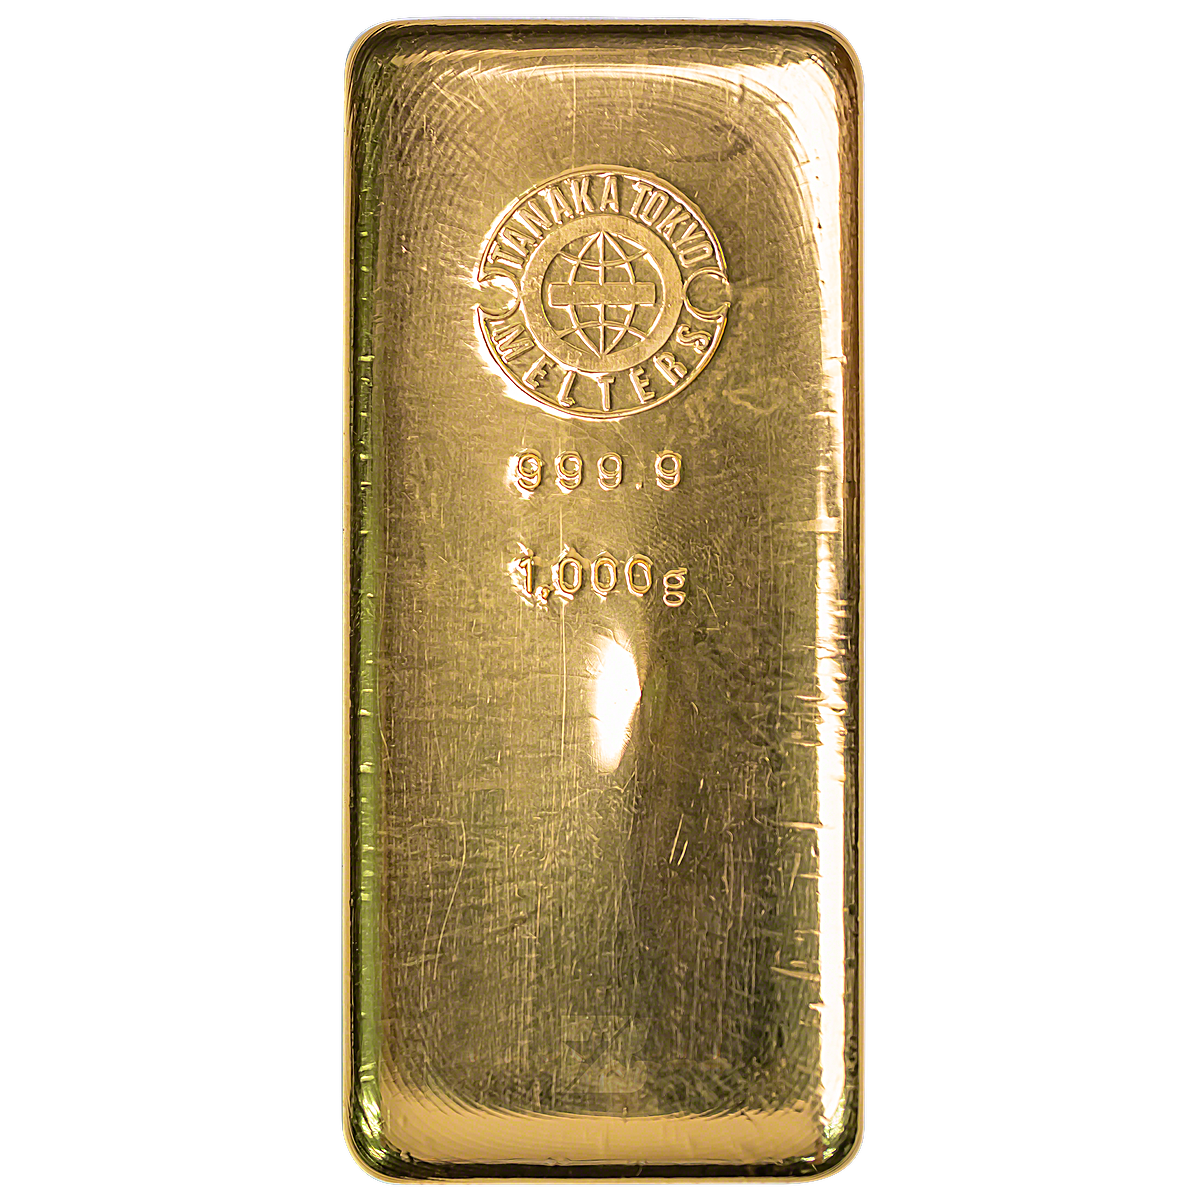 Buy 1 Kilogram Tanaka Gold Bullion Bar